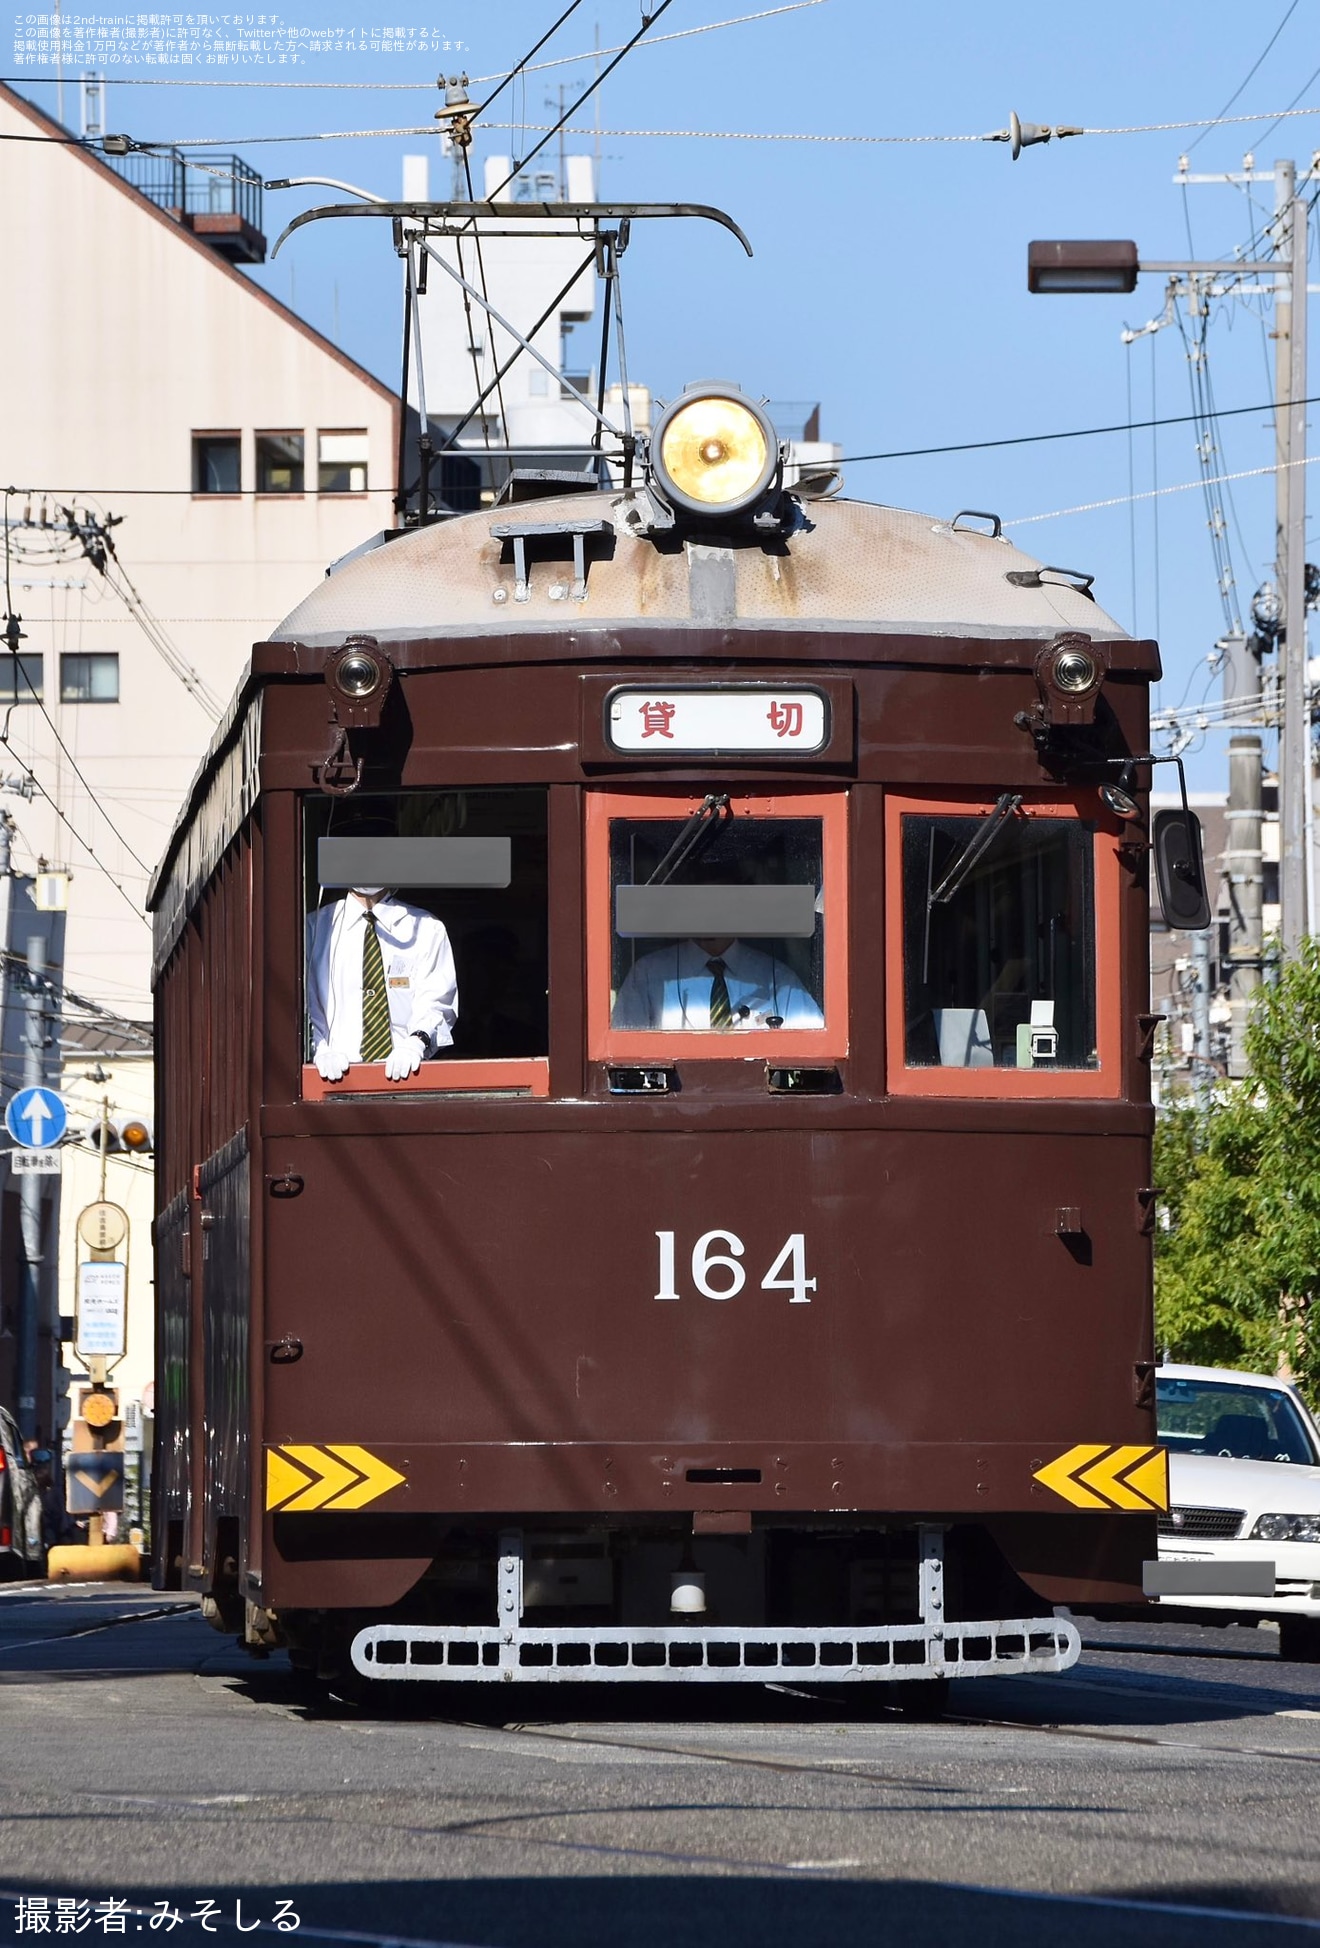 【阪堺】「レトロ列車で行く~歴史探訪旅行~」ツアーが催行の拡大写真